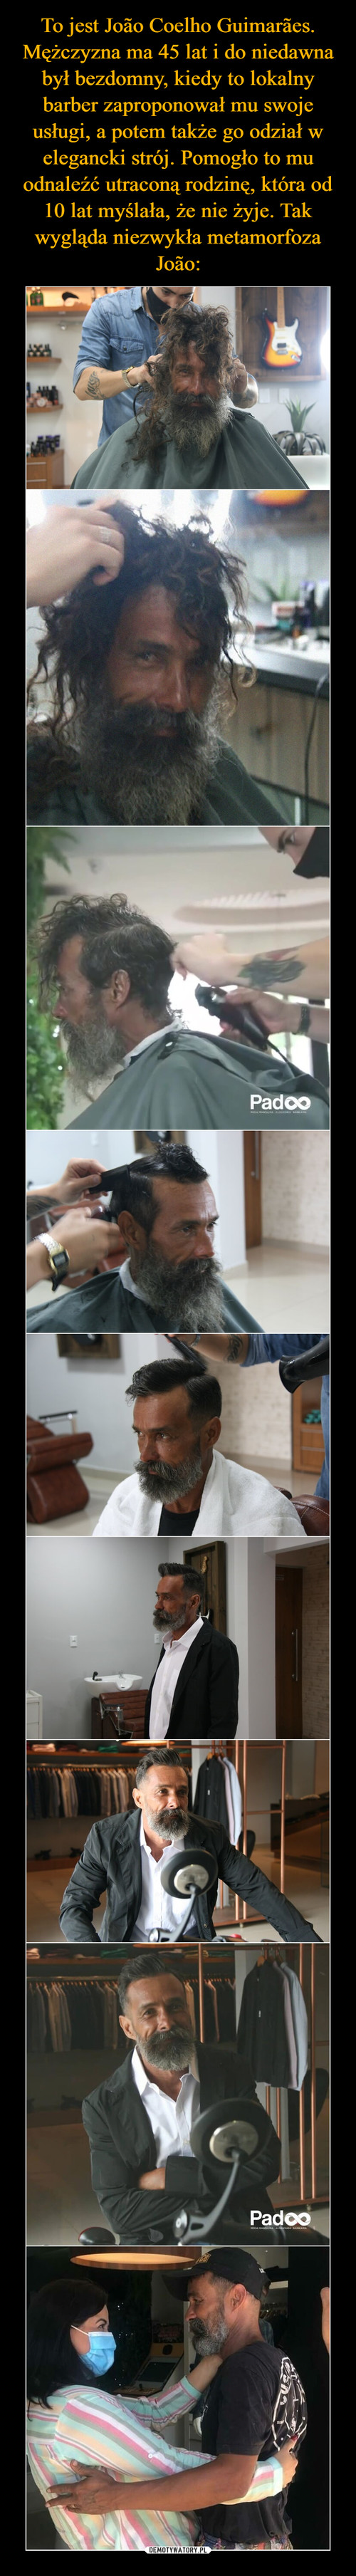 To jest João Coelho Guimarães. Mężczyzna ma 45 lat i do niedawna był bezdomny, kiedy to lokalny barber zaproponował mu swoje usługi, a potem także go odział w elegancki strój. Pomogło to mu odnaleźć utraconą rodzinę, która od 10 lat myślała, że nie żyje. Tak wygląda niezwykła metamorfoza João: